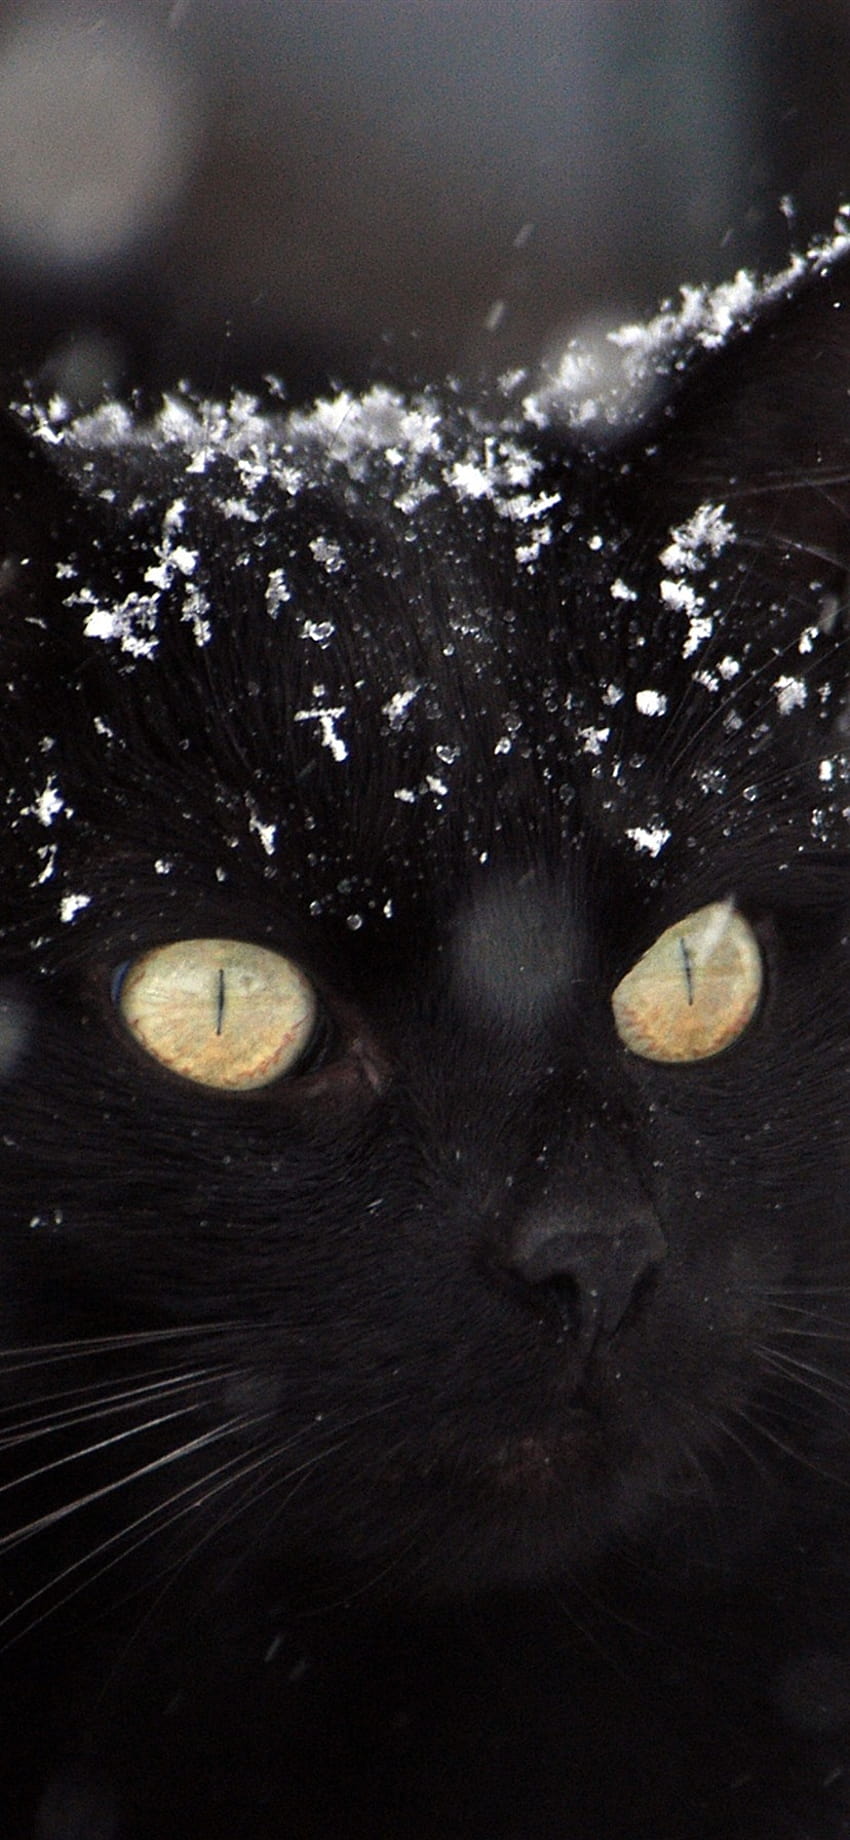 Gato negro, nieve, invierno 1080x1920 iPhone 8/7/6/6S Plus, , invierno oscuro iphone fondo de pantalla del teléfono